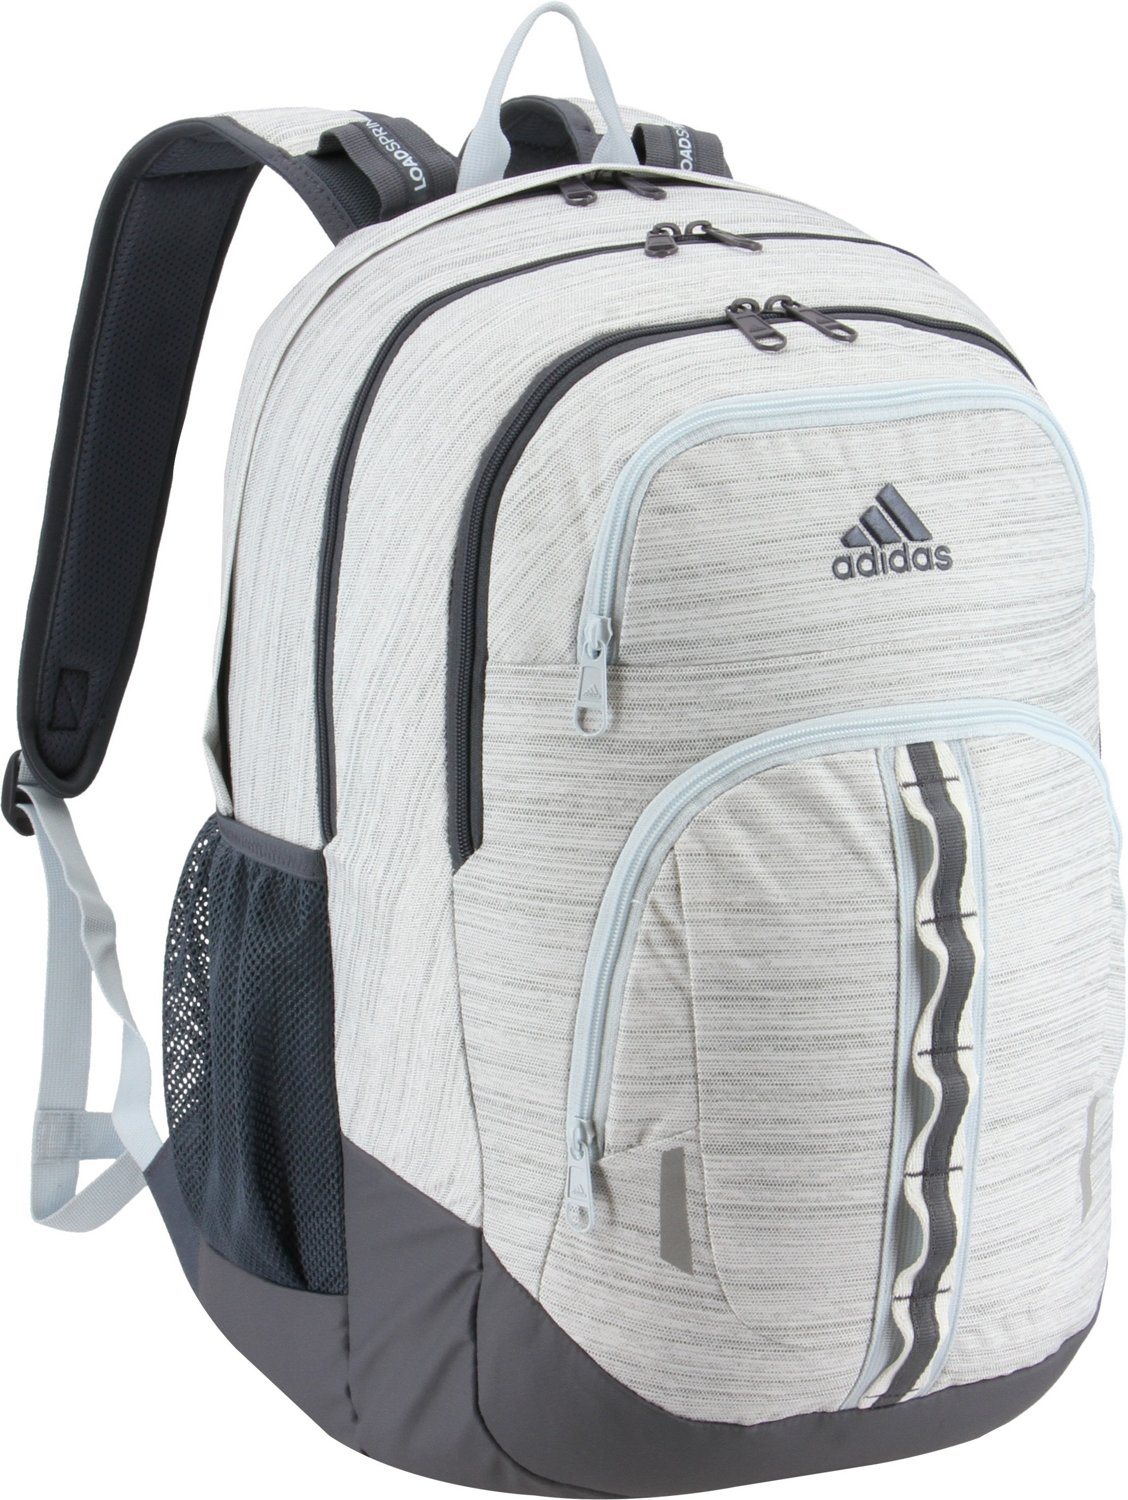 Adidas Prime II Backpack White/Black 